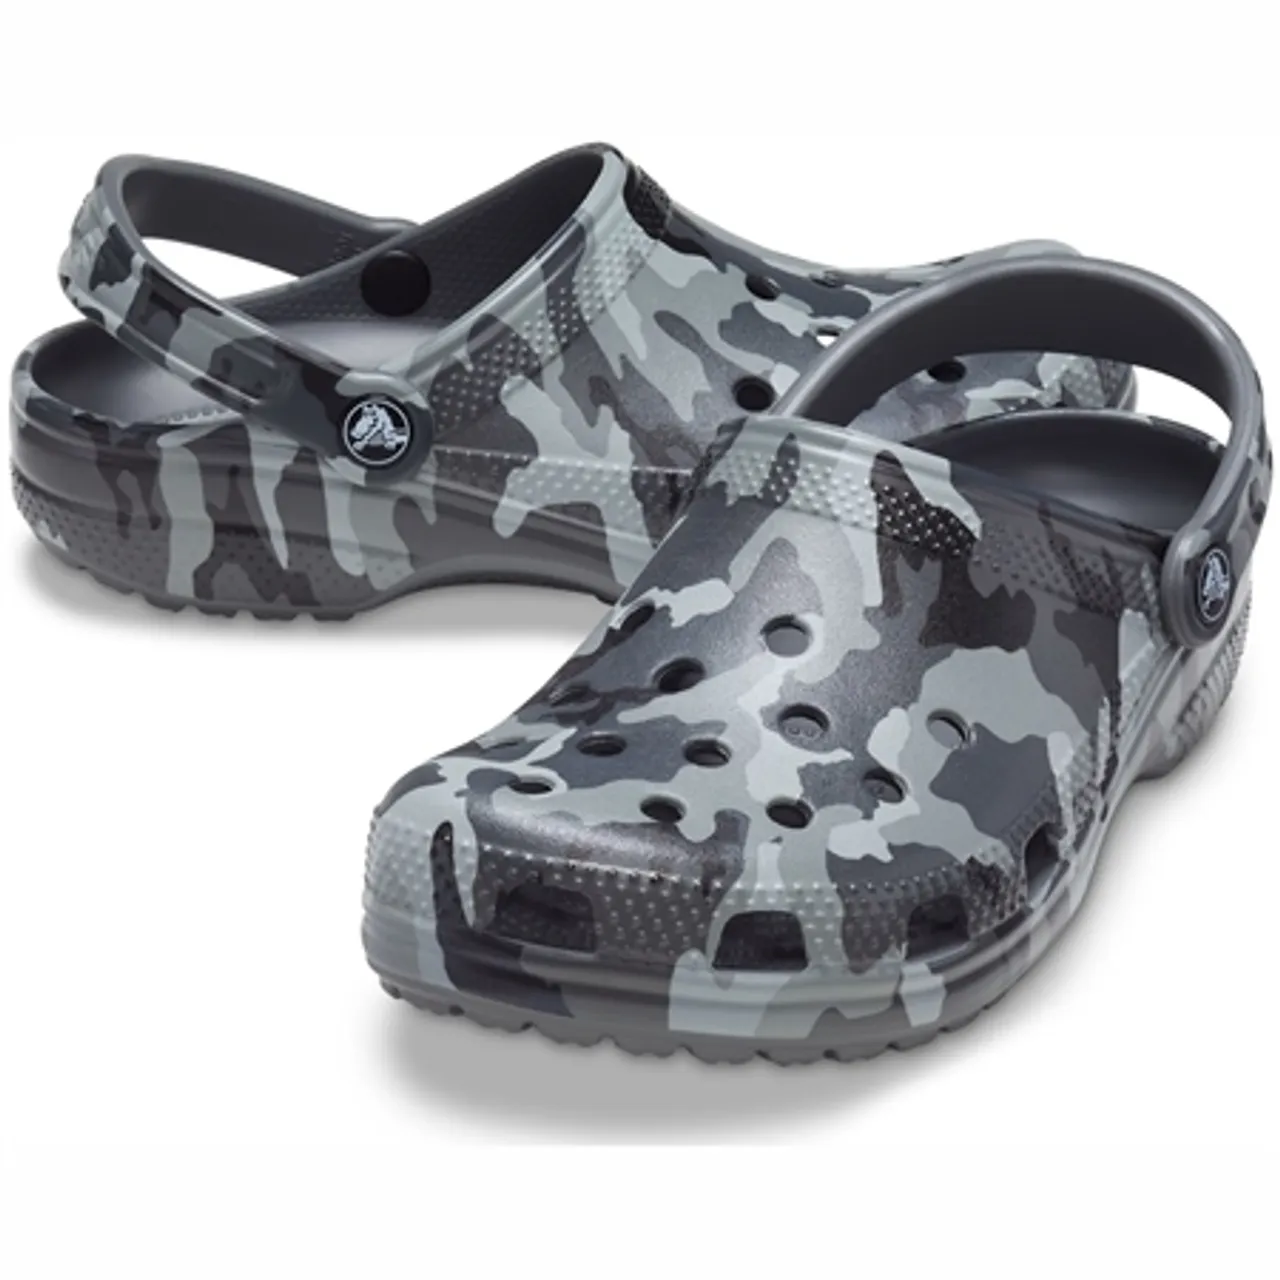 Crocs Boys Classic Camo Clogs - Black & Grey - KIDS 11 (EU 28-29)